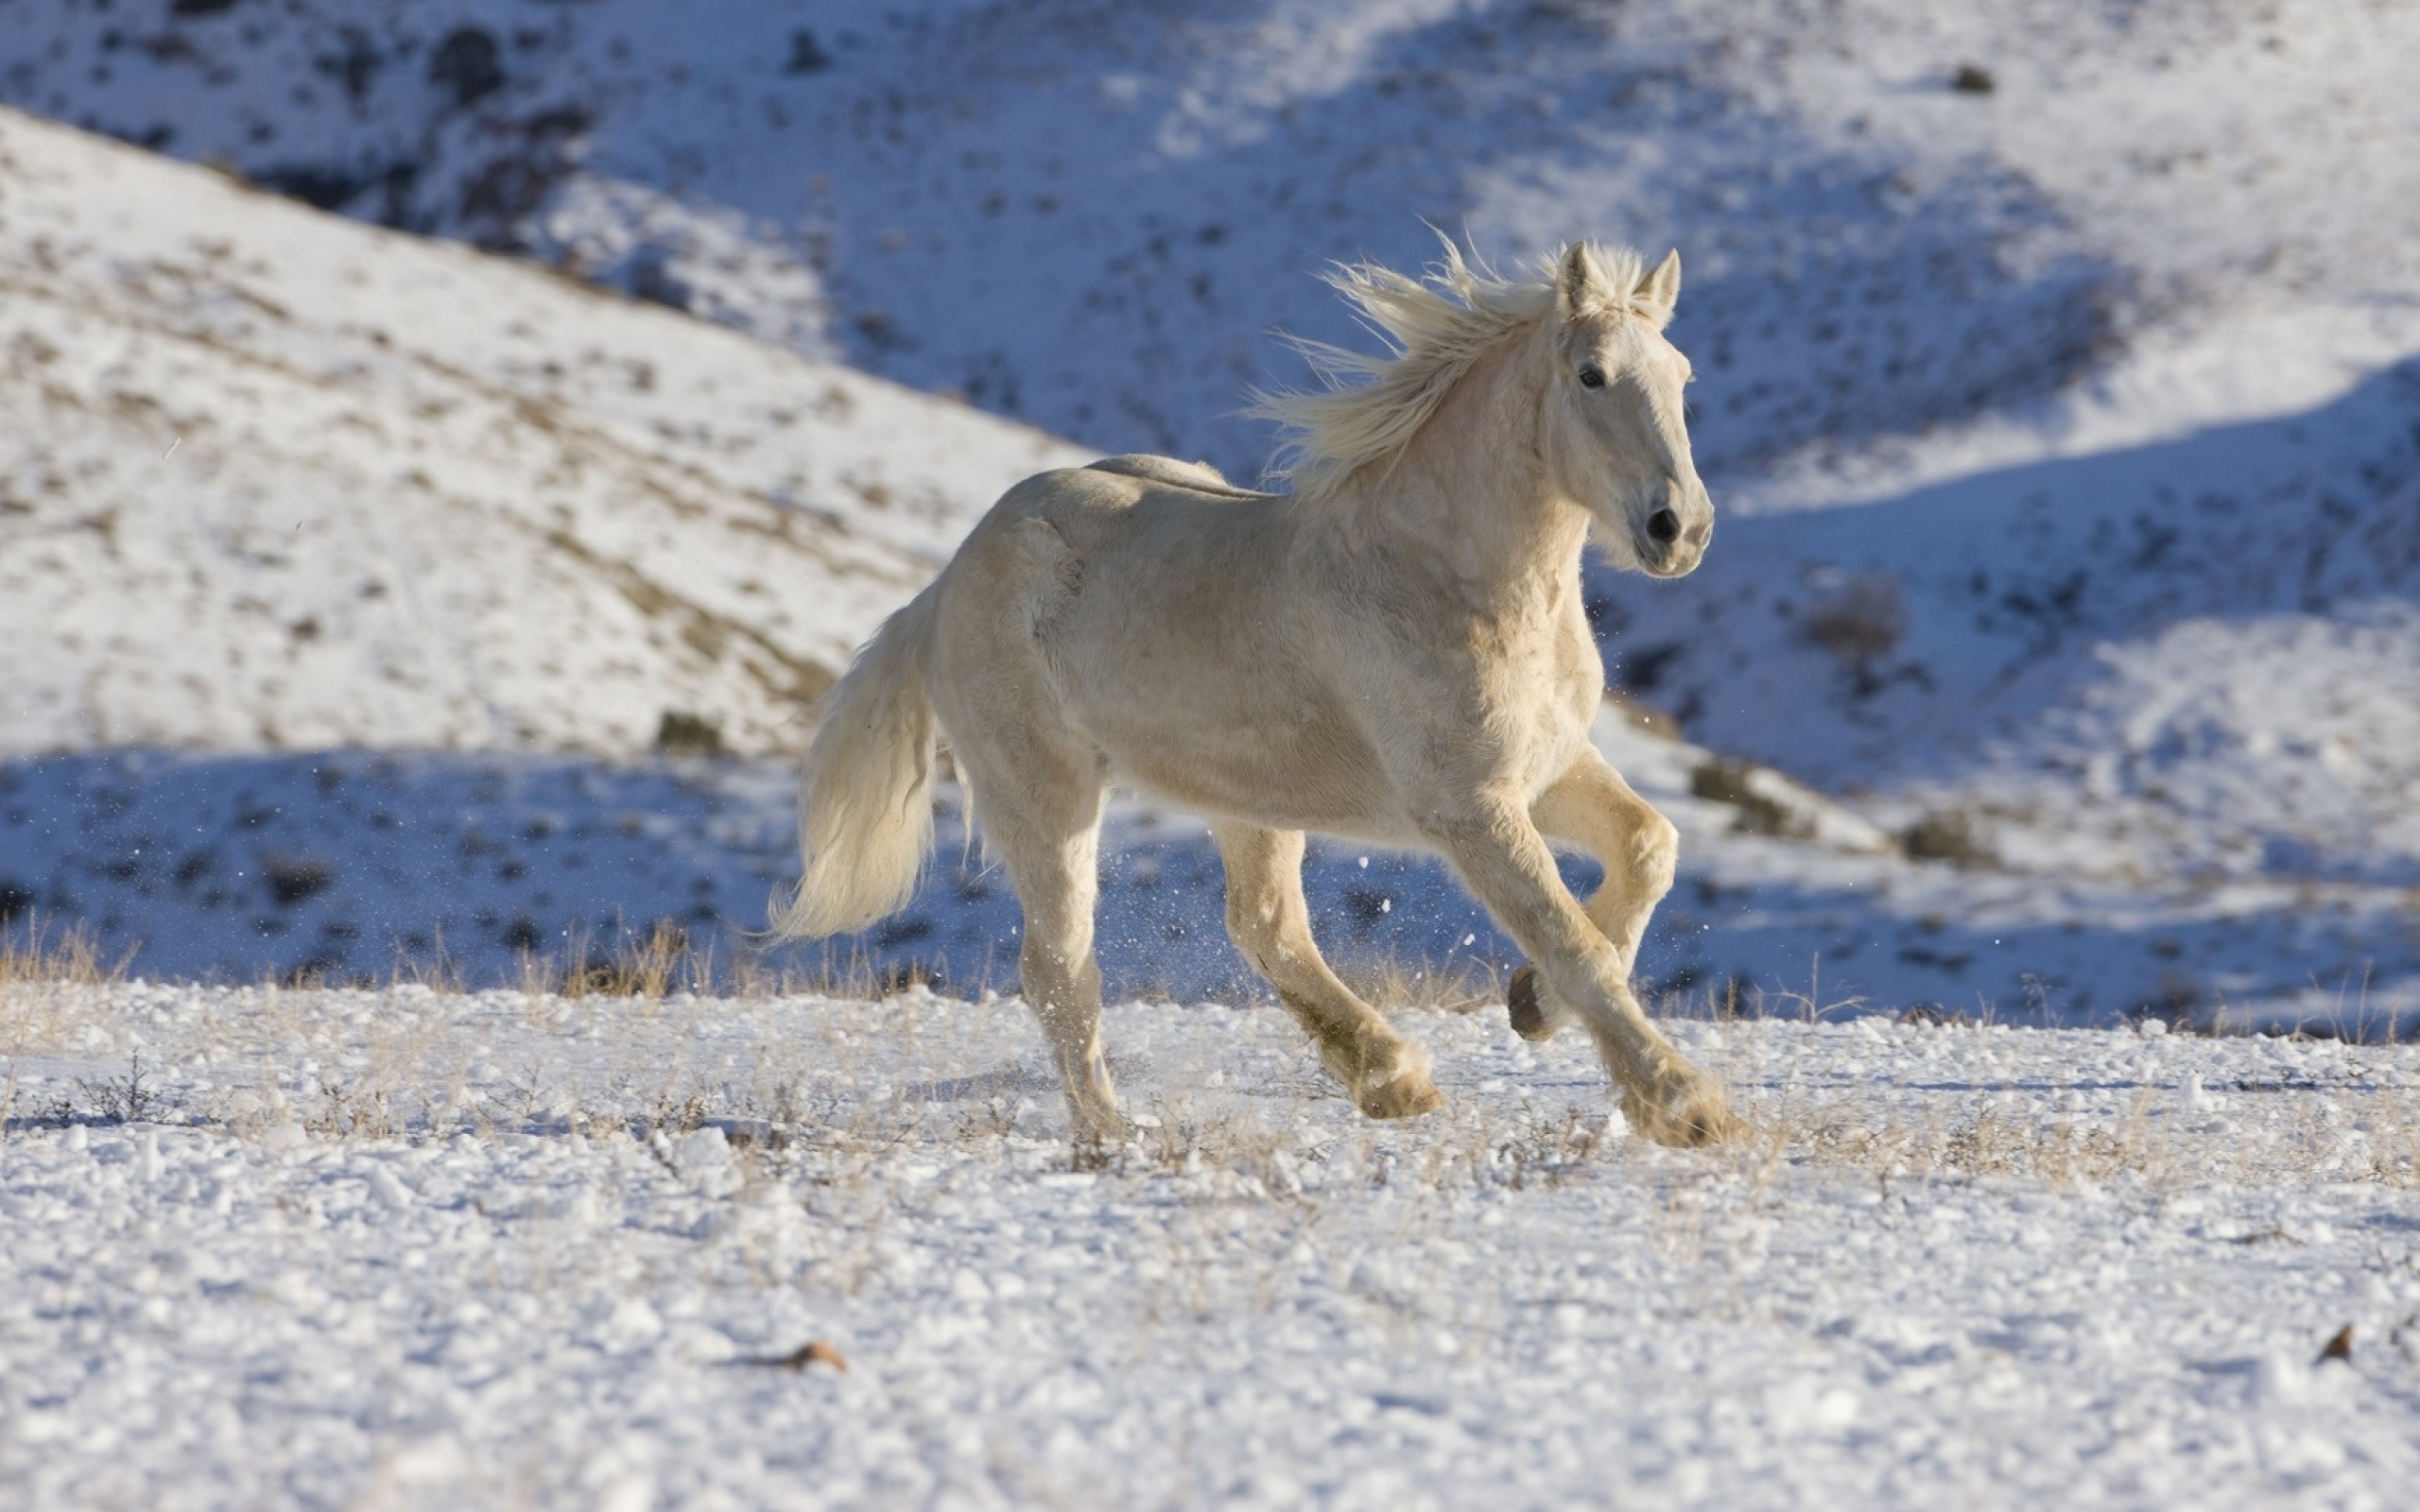 Скачать обои бесплатно Животные, Снег, Лошадь картинка на рабочий стол ПК